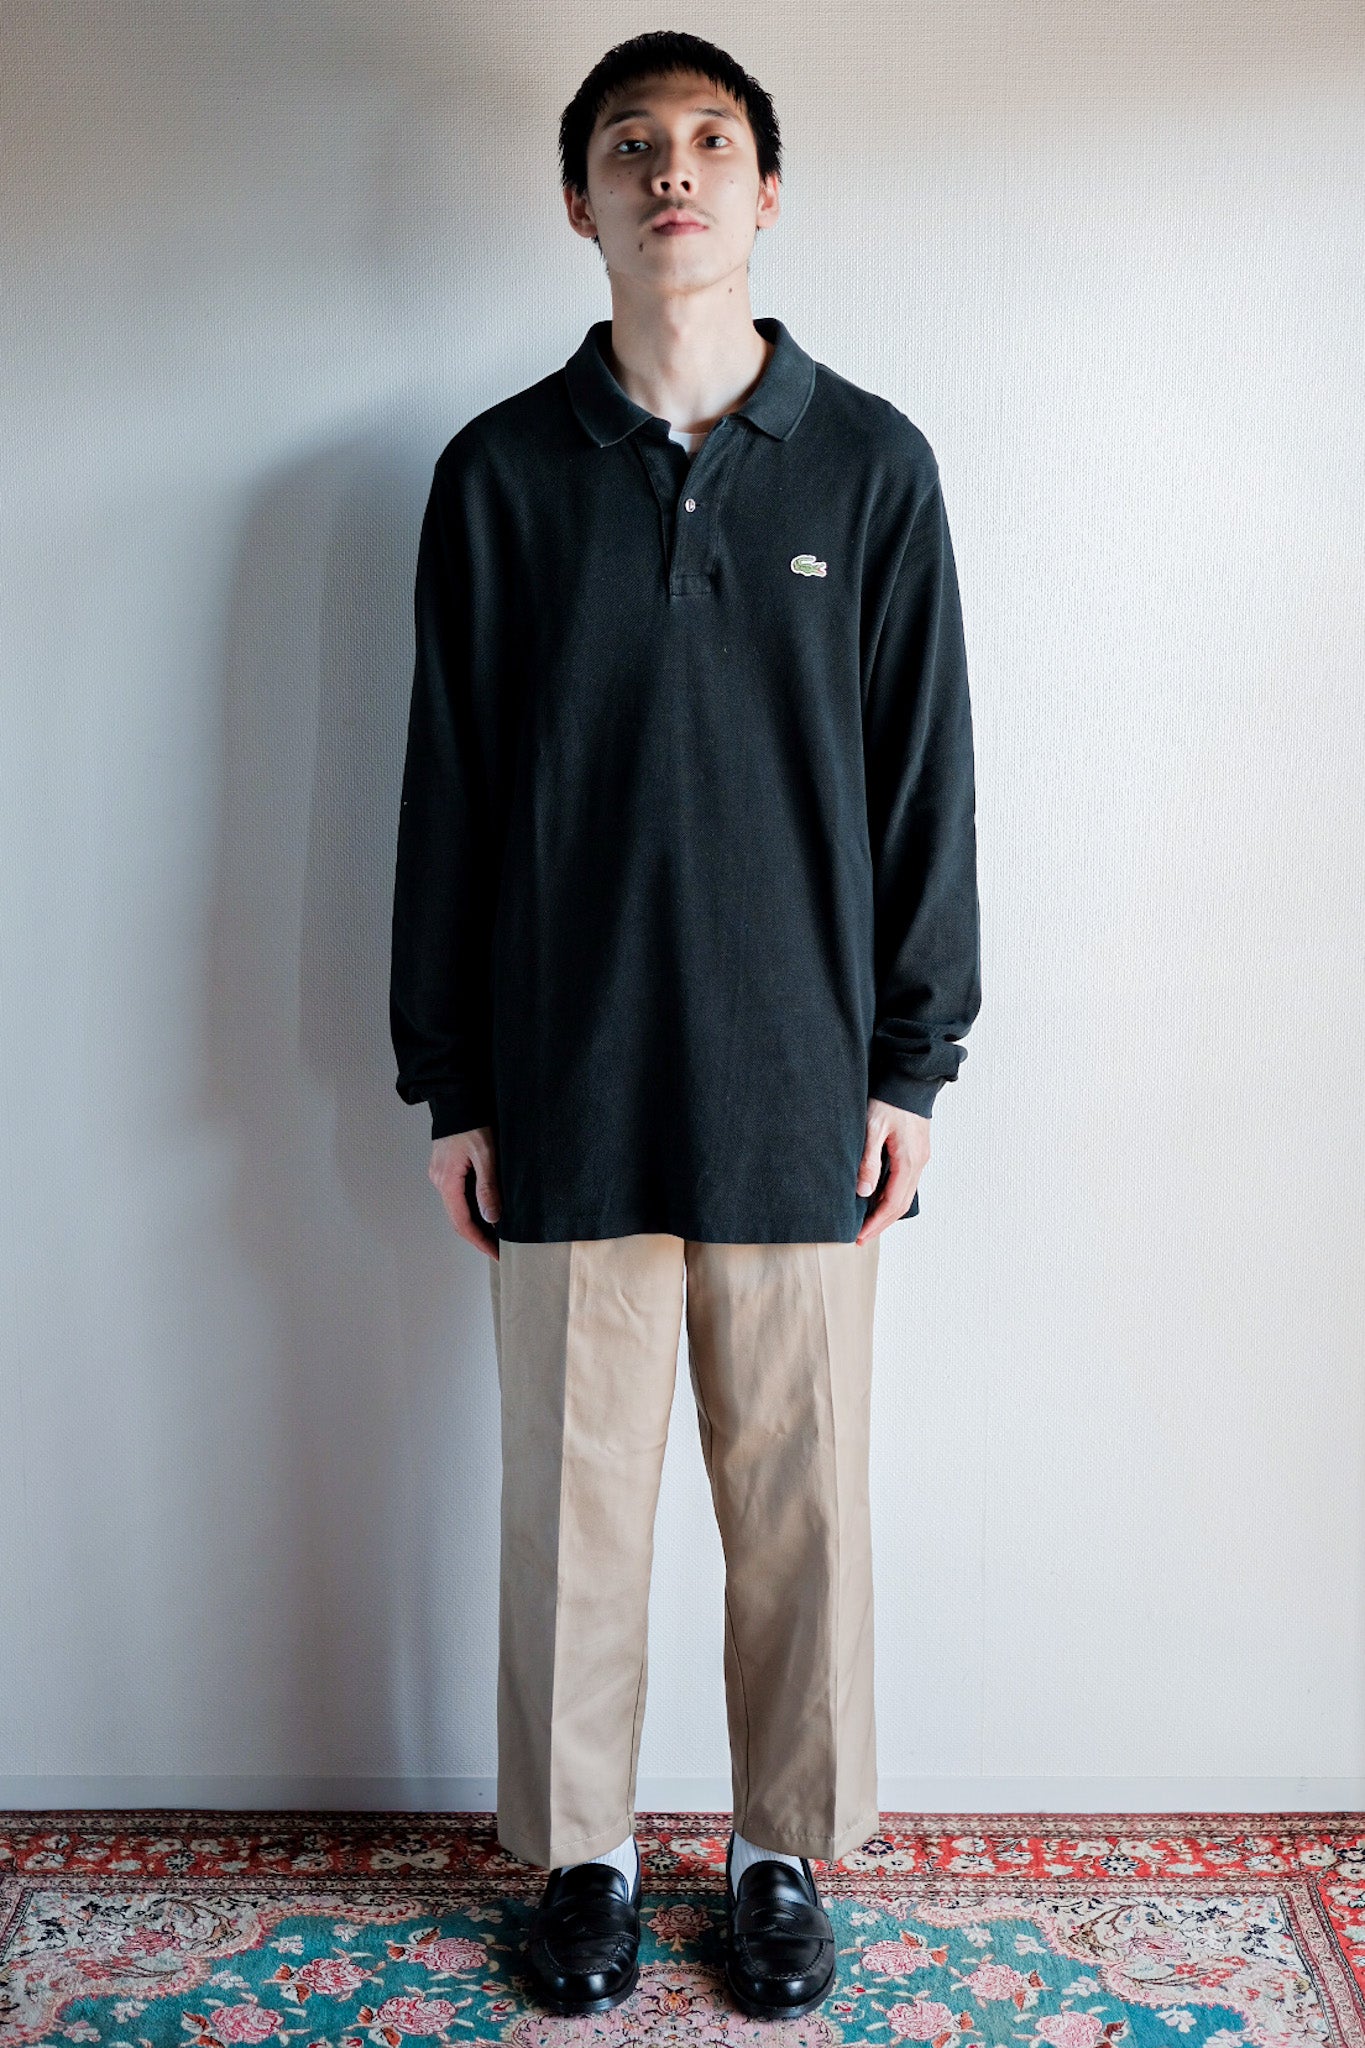 【~80's】CHEMISE LACOSTE L/S Polo Shirt Size.5 "Black"